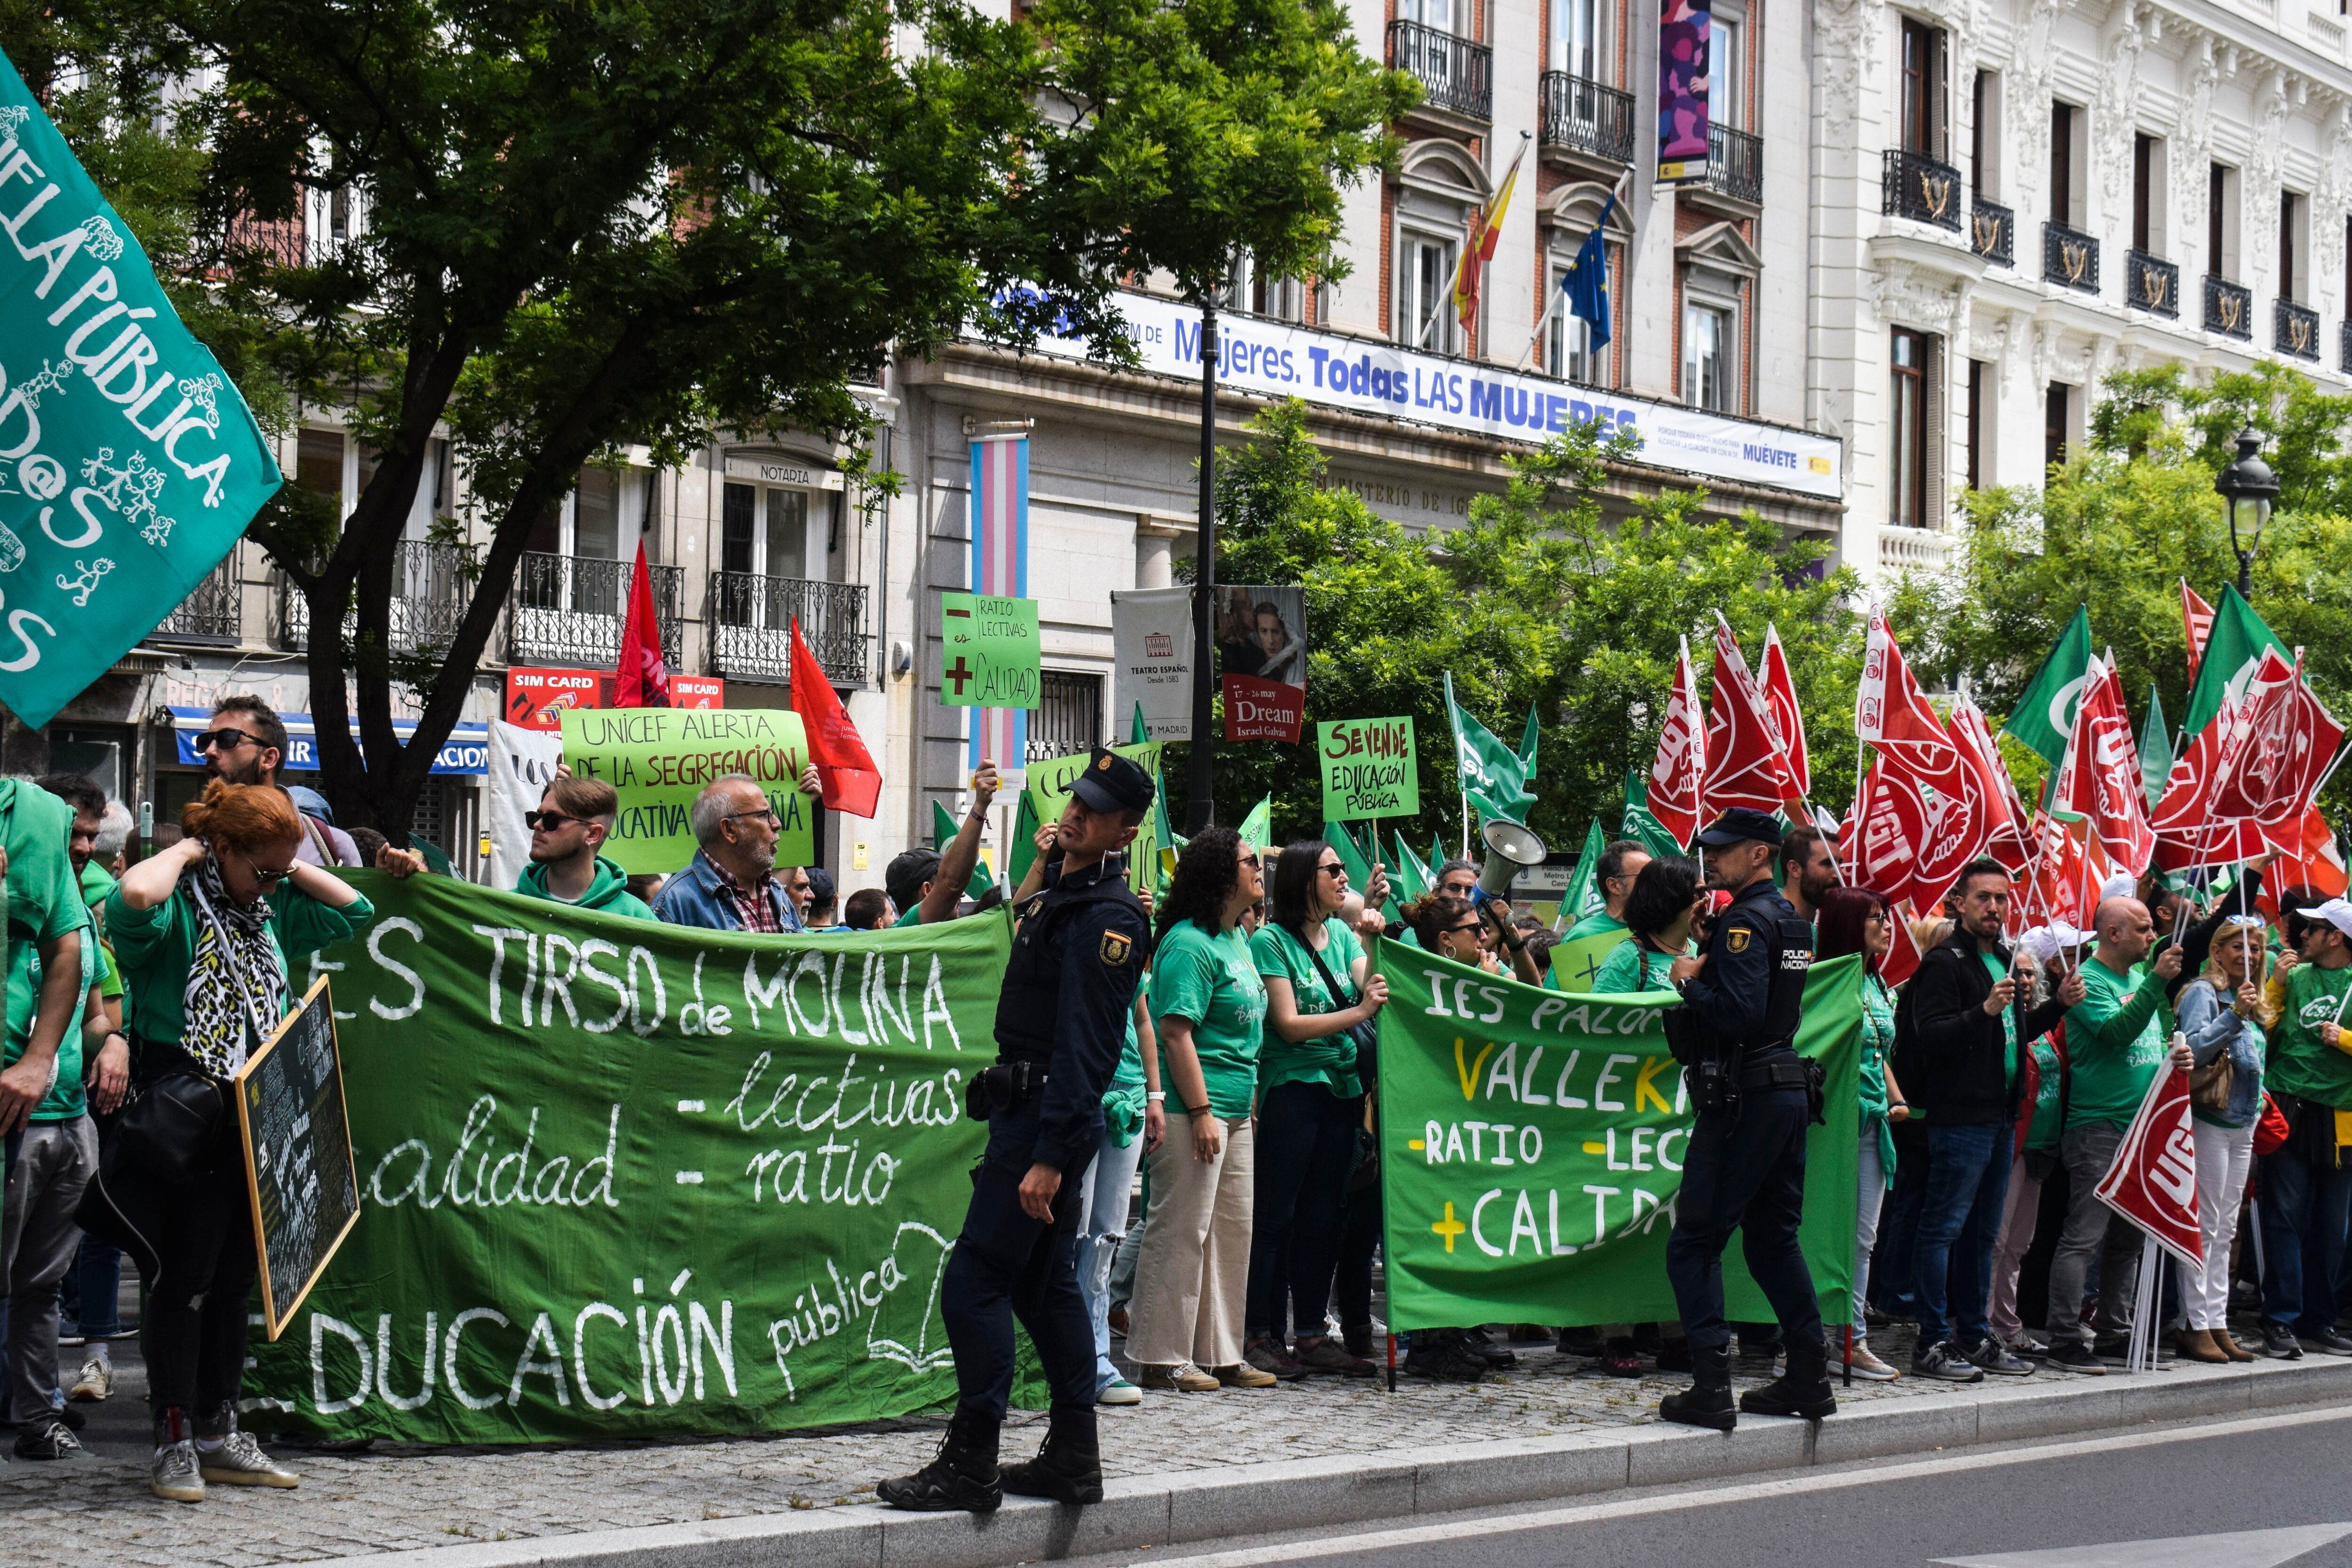 Un cordón policial ha impedido que los manifestantes ocupen ambos carriles de la calle de Alcalá, frente a la Consejería de Educación.